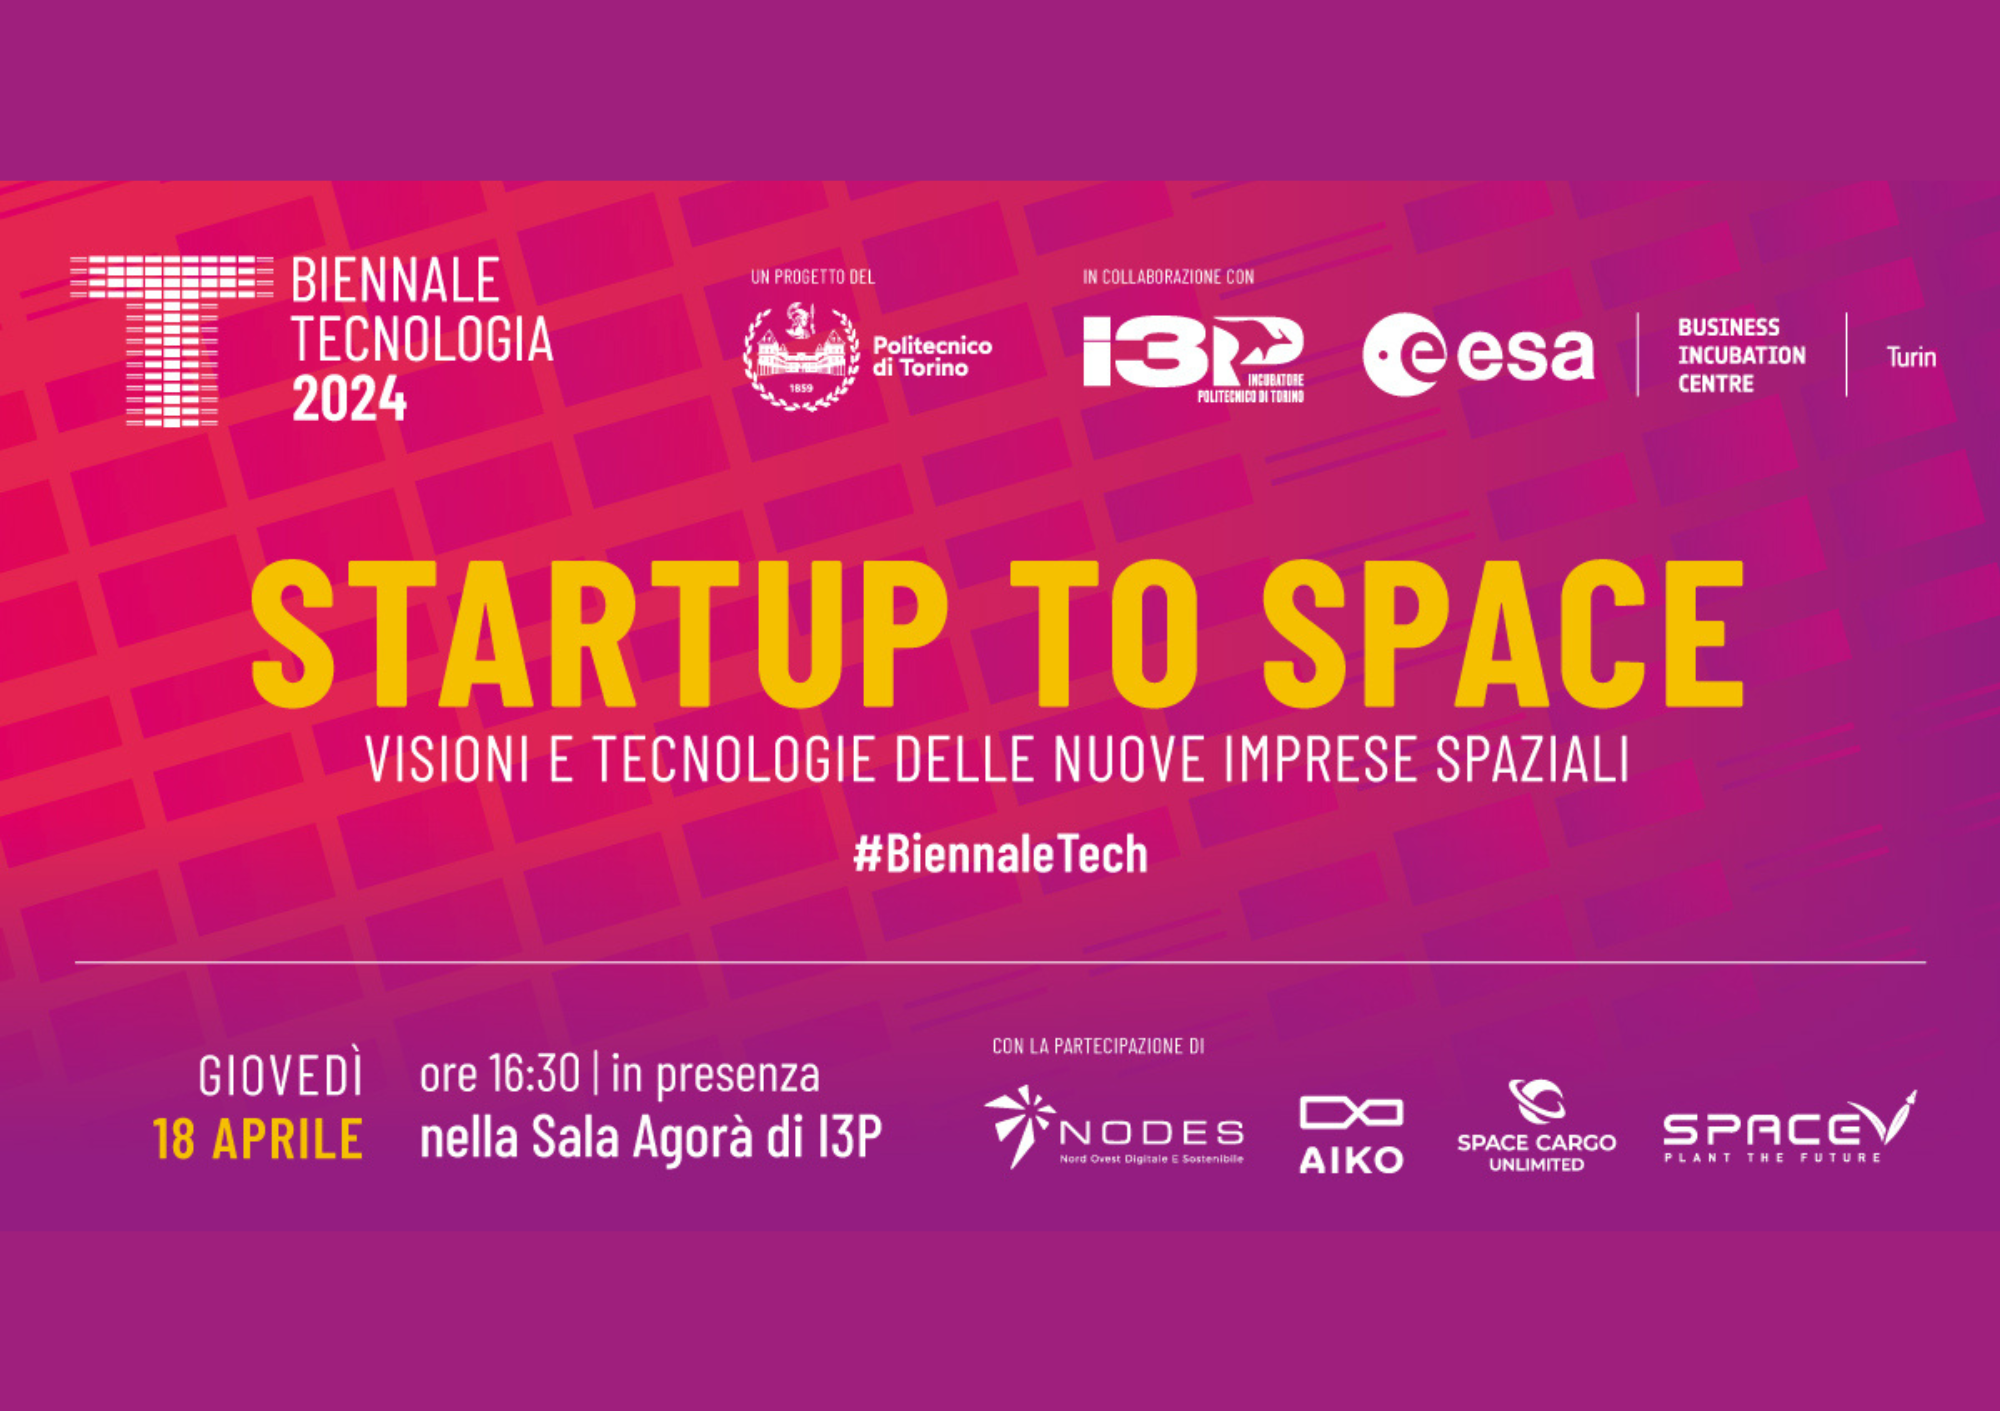 18 aprile: Evento Startup To Space. Visioni e tecnologie delle nuove imprese spaziali